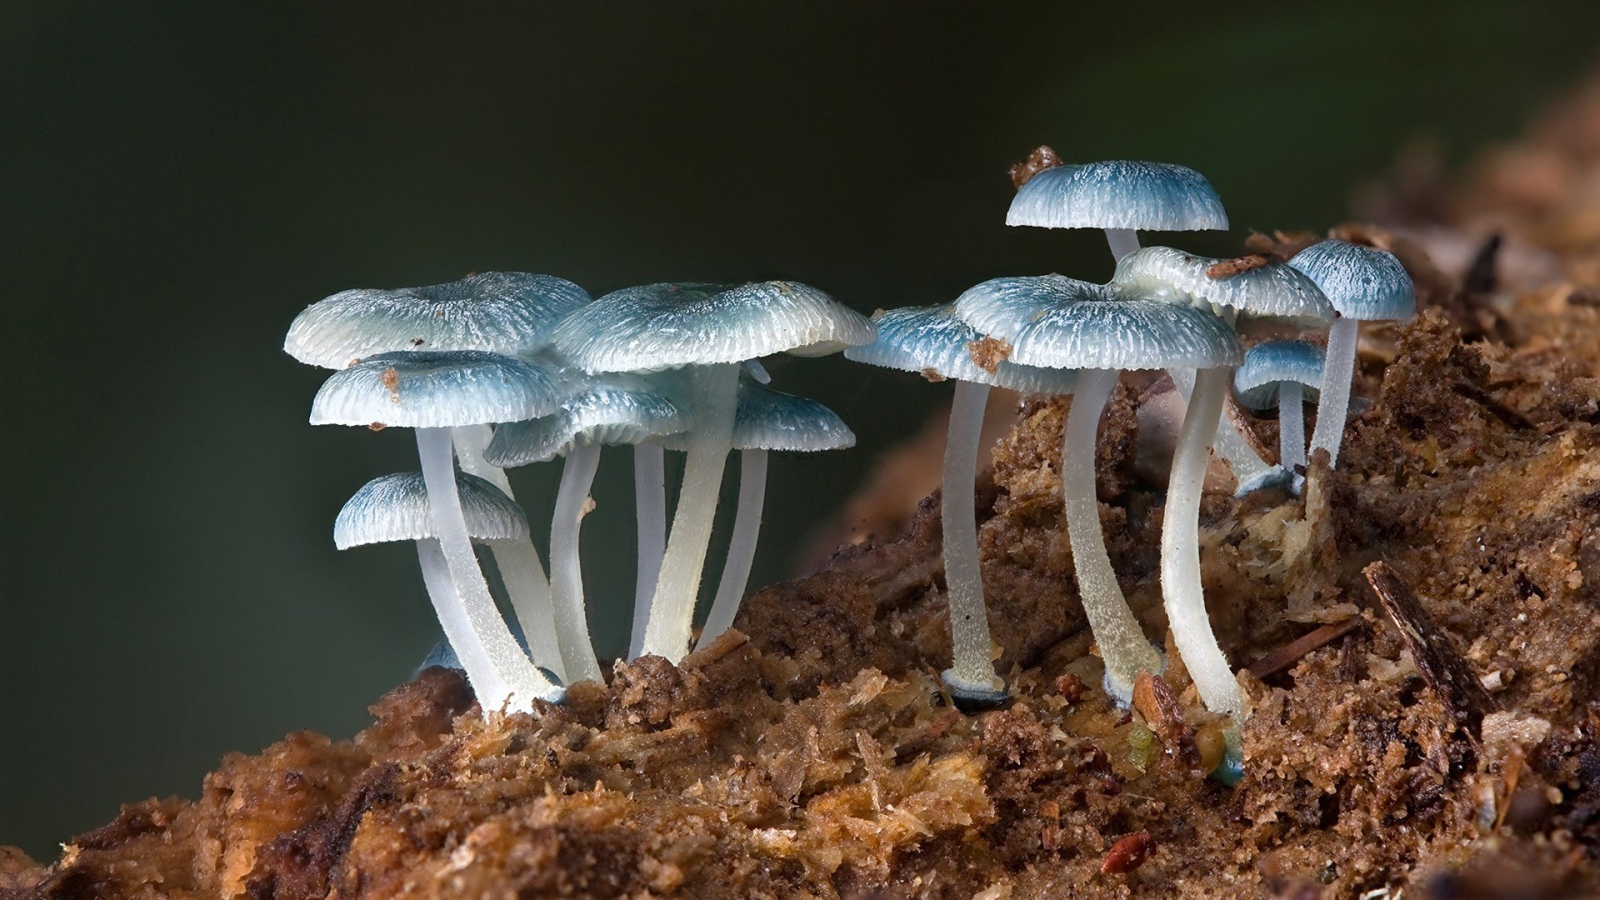 Семейство голубых грибов